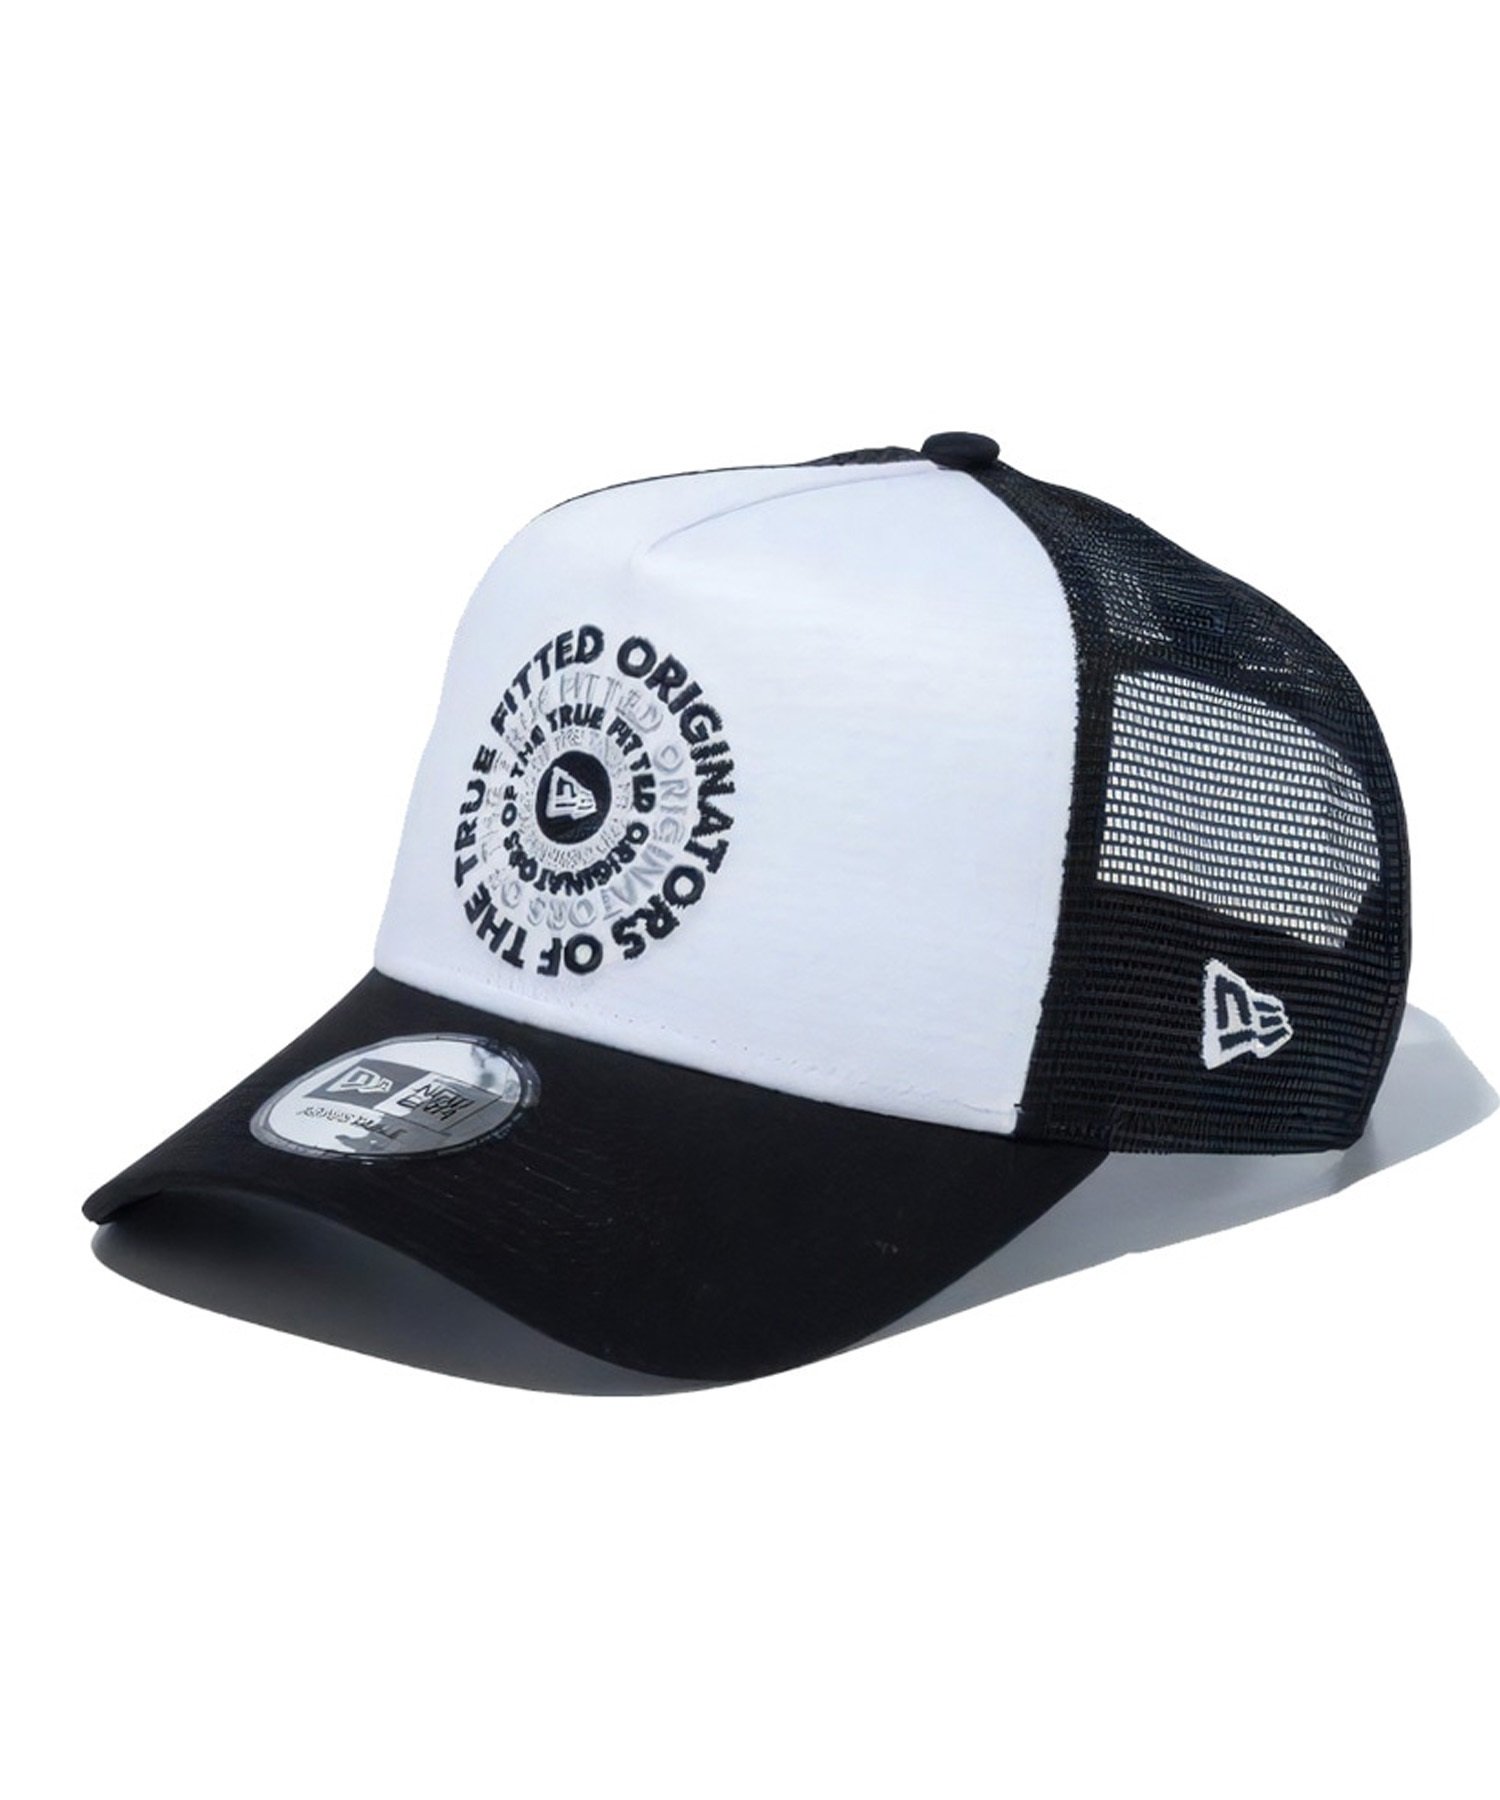 NEW ERA/ニューエラ 9FORTY A-Frame トラッカー Circle OOTTF ブラック ホワイト キャップ 帽子 フリーサイズ メッシュ 14109740(BLK-FREE)